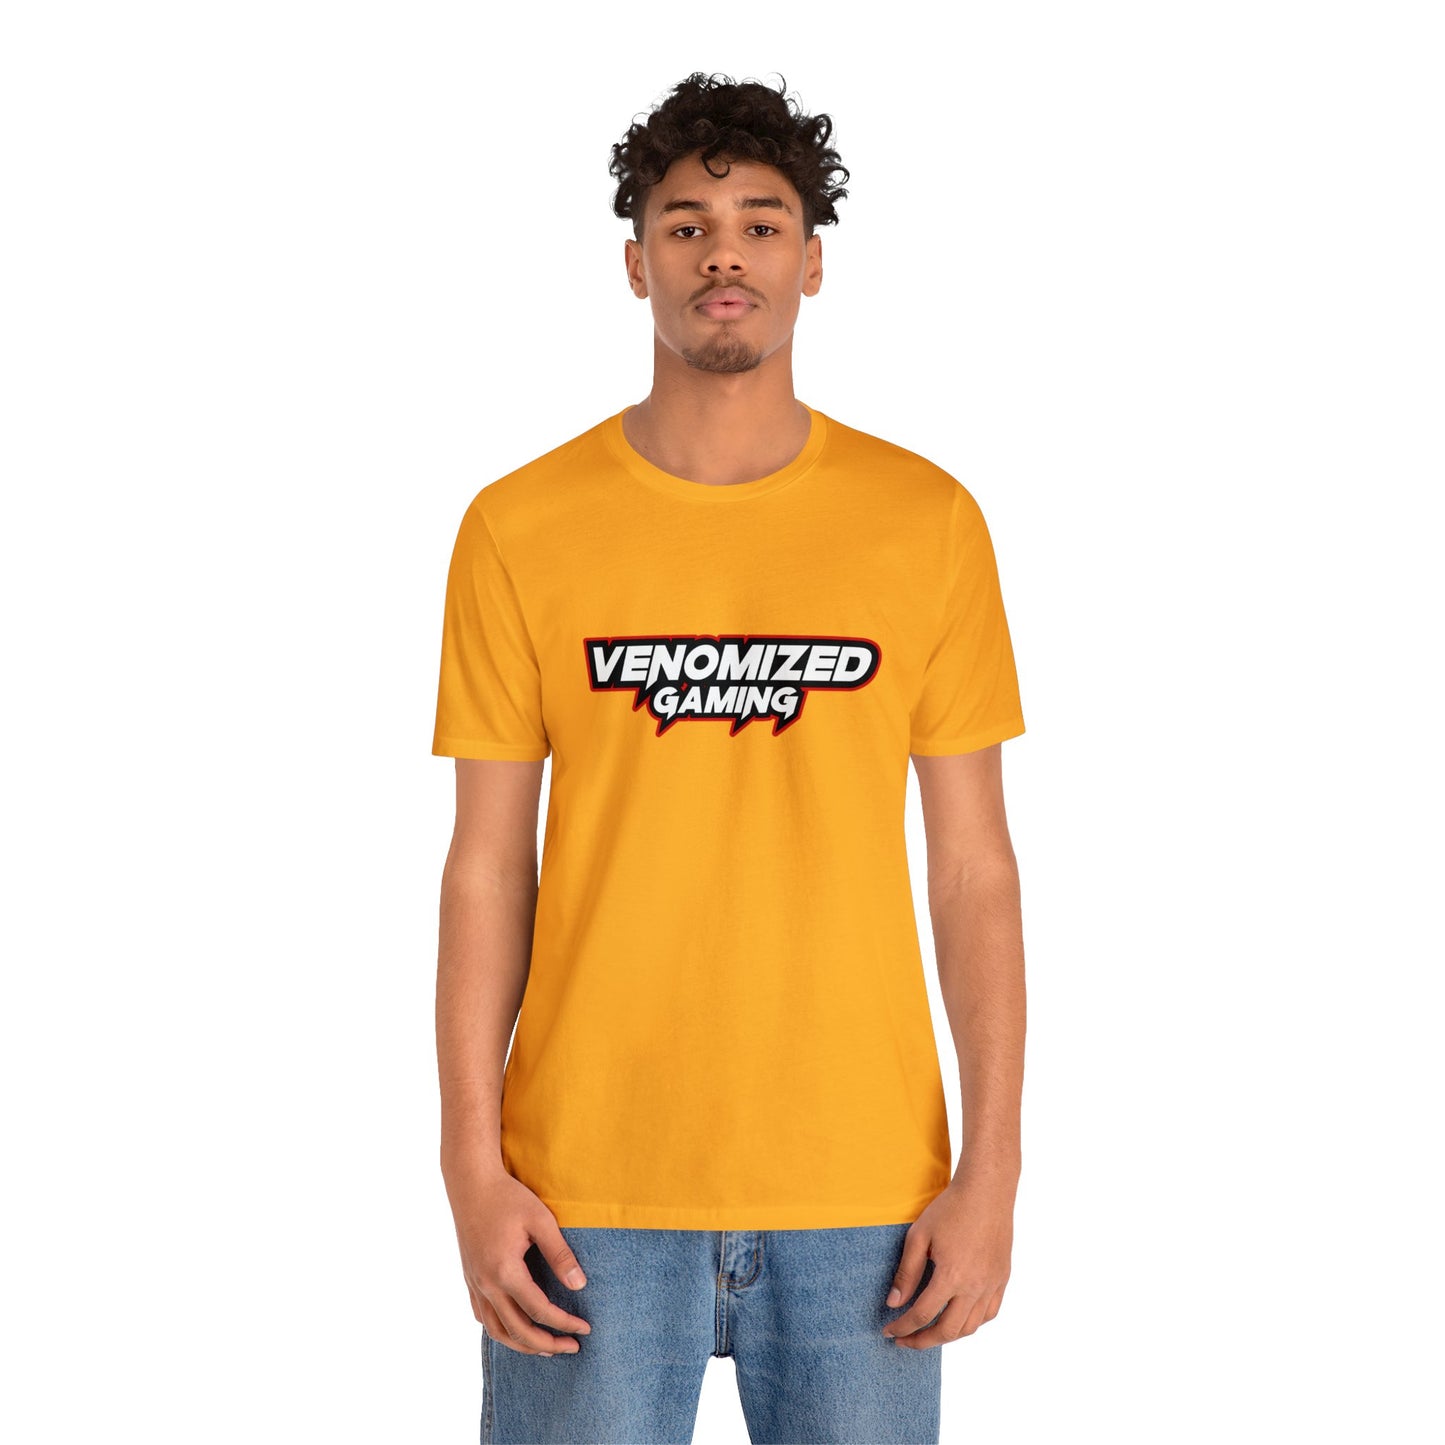 Venomized Gaming Classic Unisex T-shirt